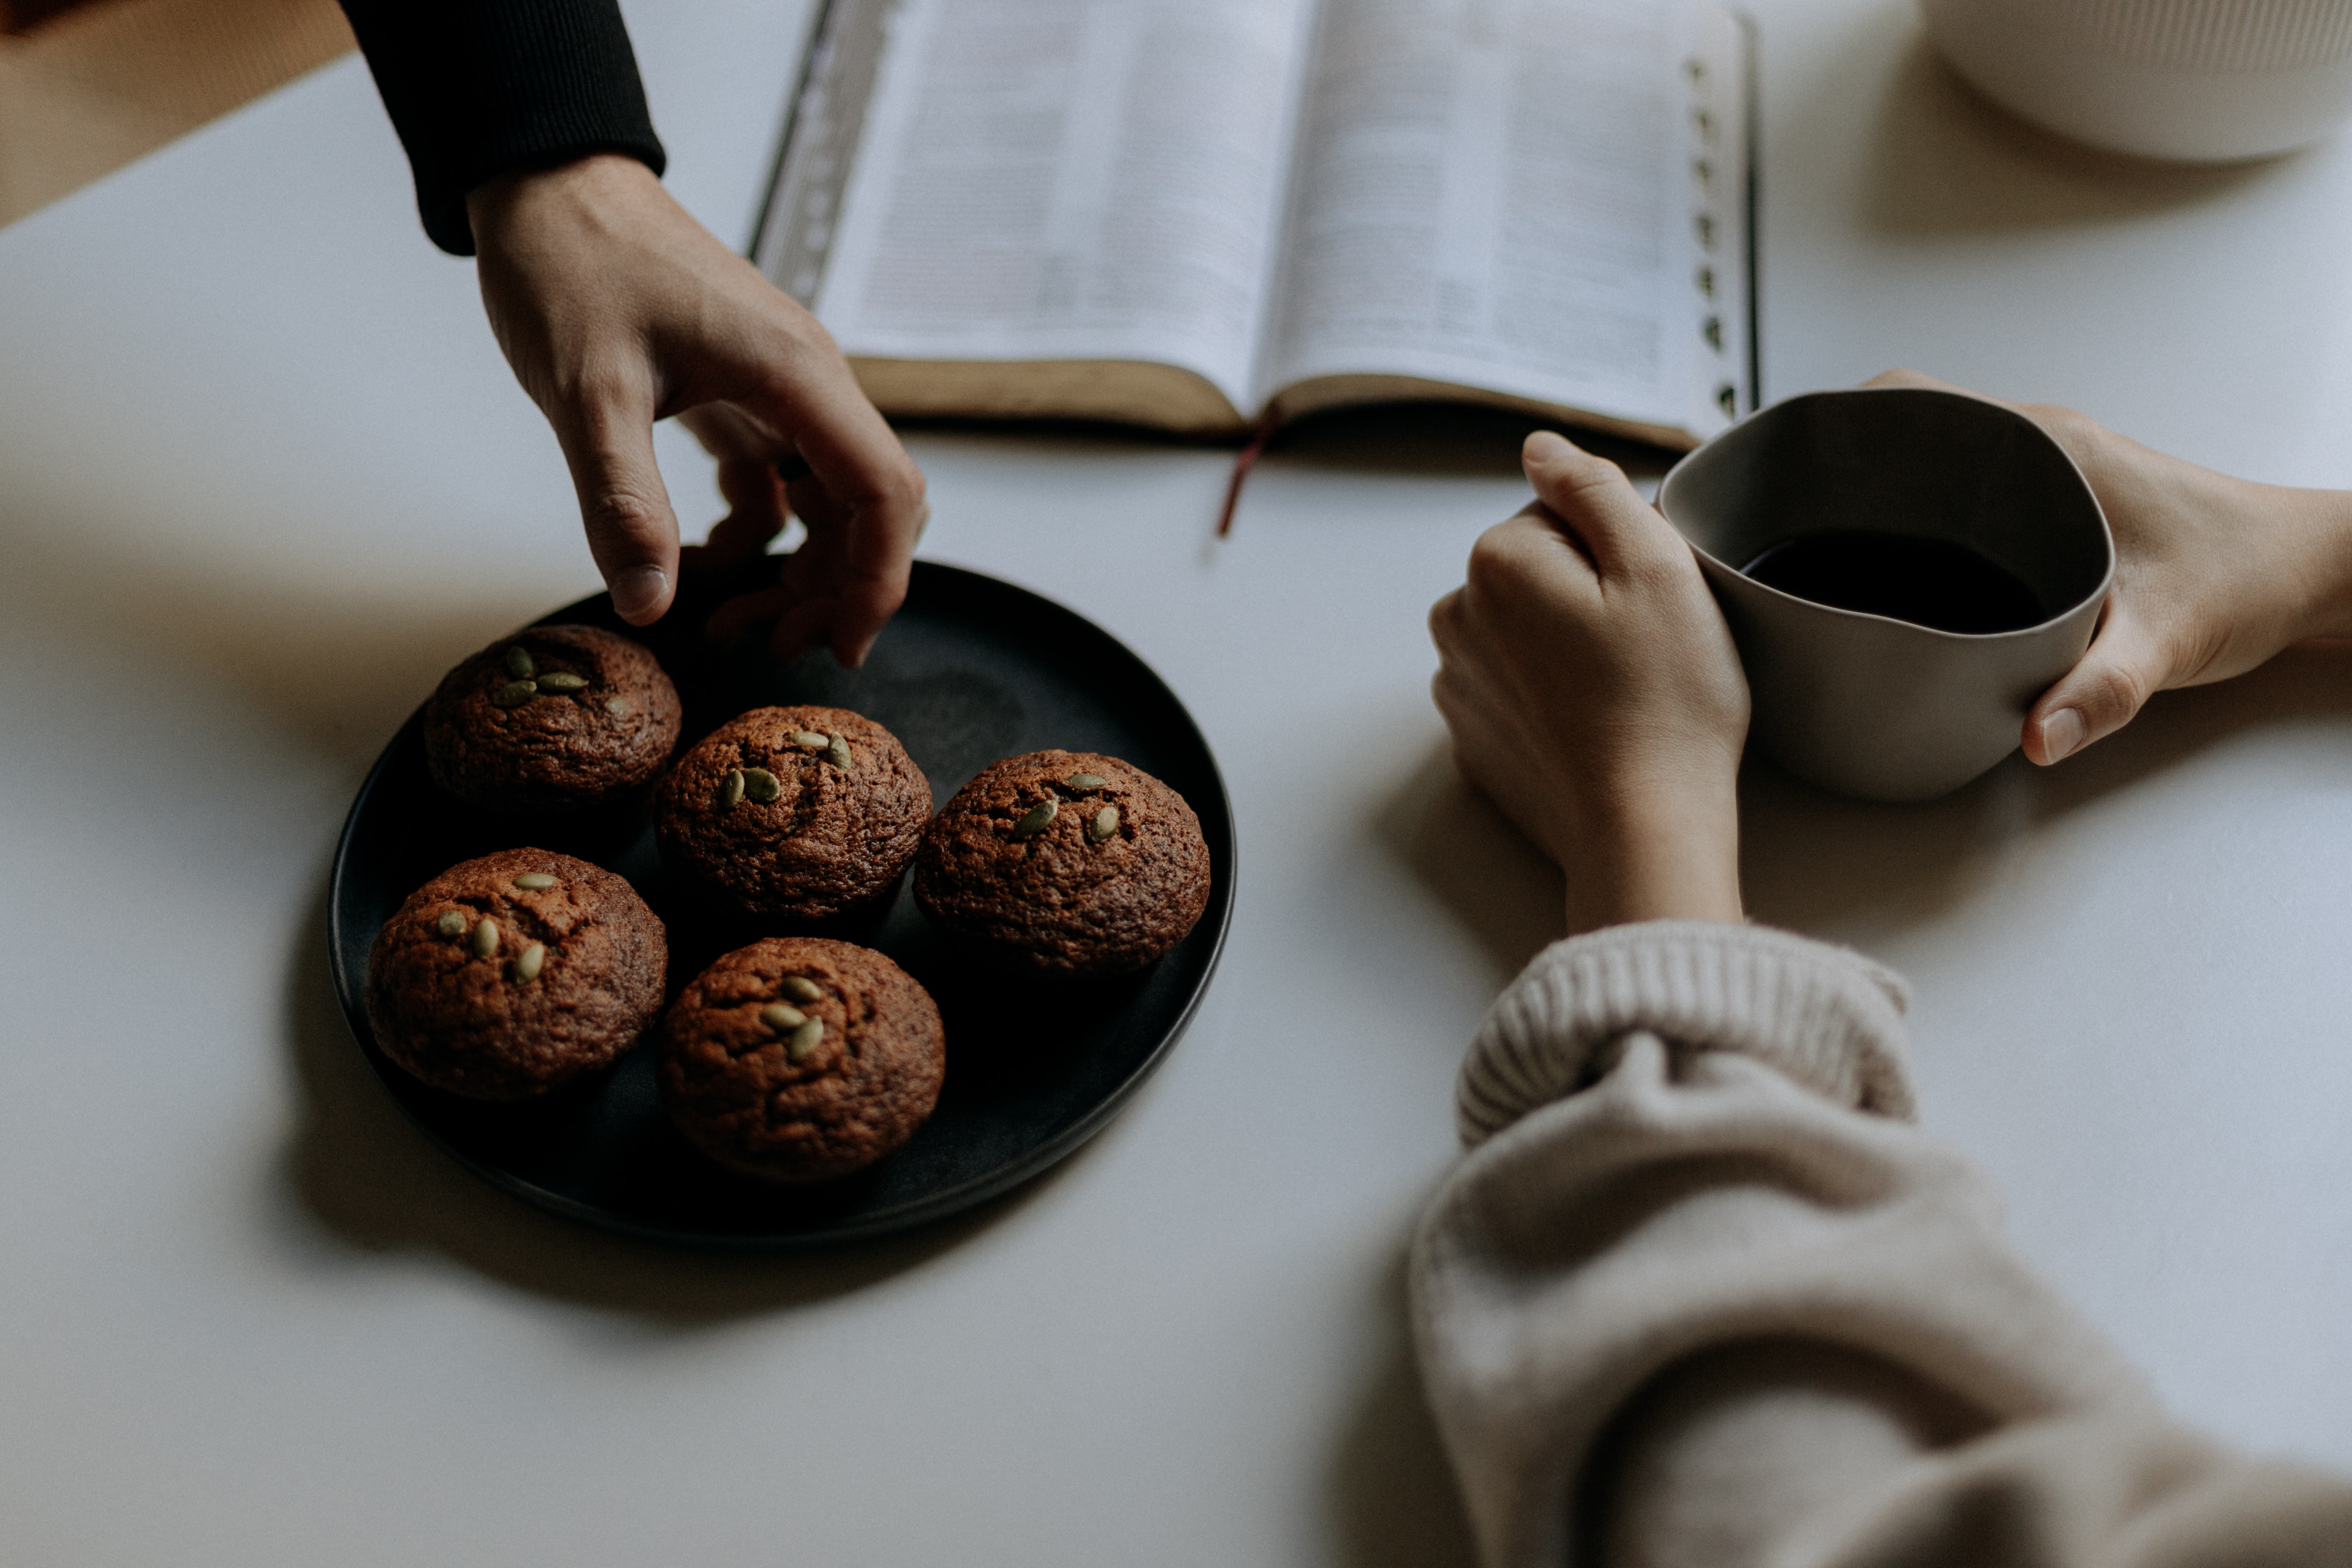 Raamatun äärellä käsiä ottamassa leivonnaisia.